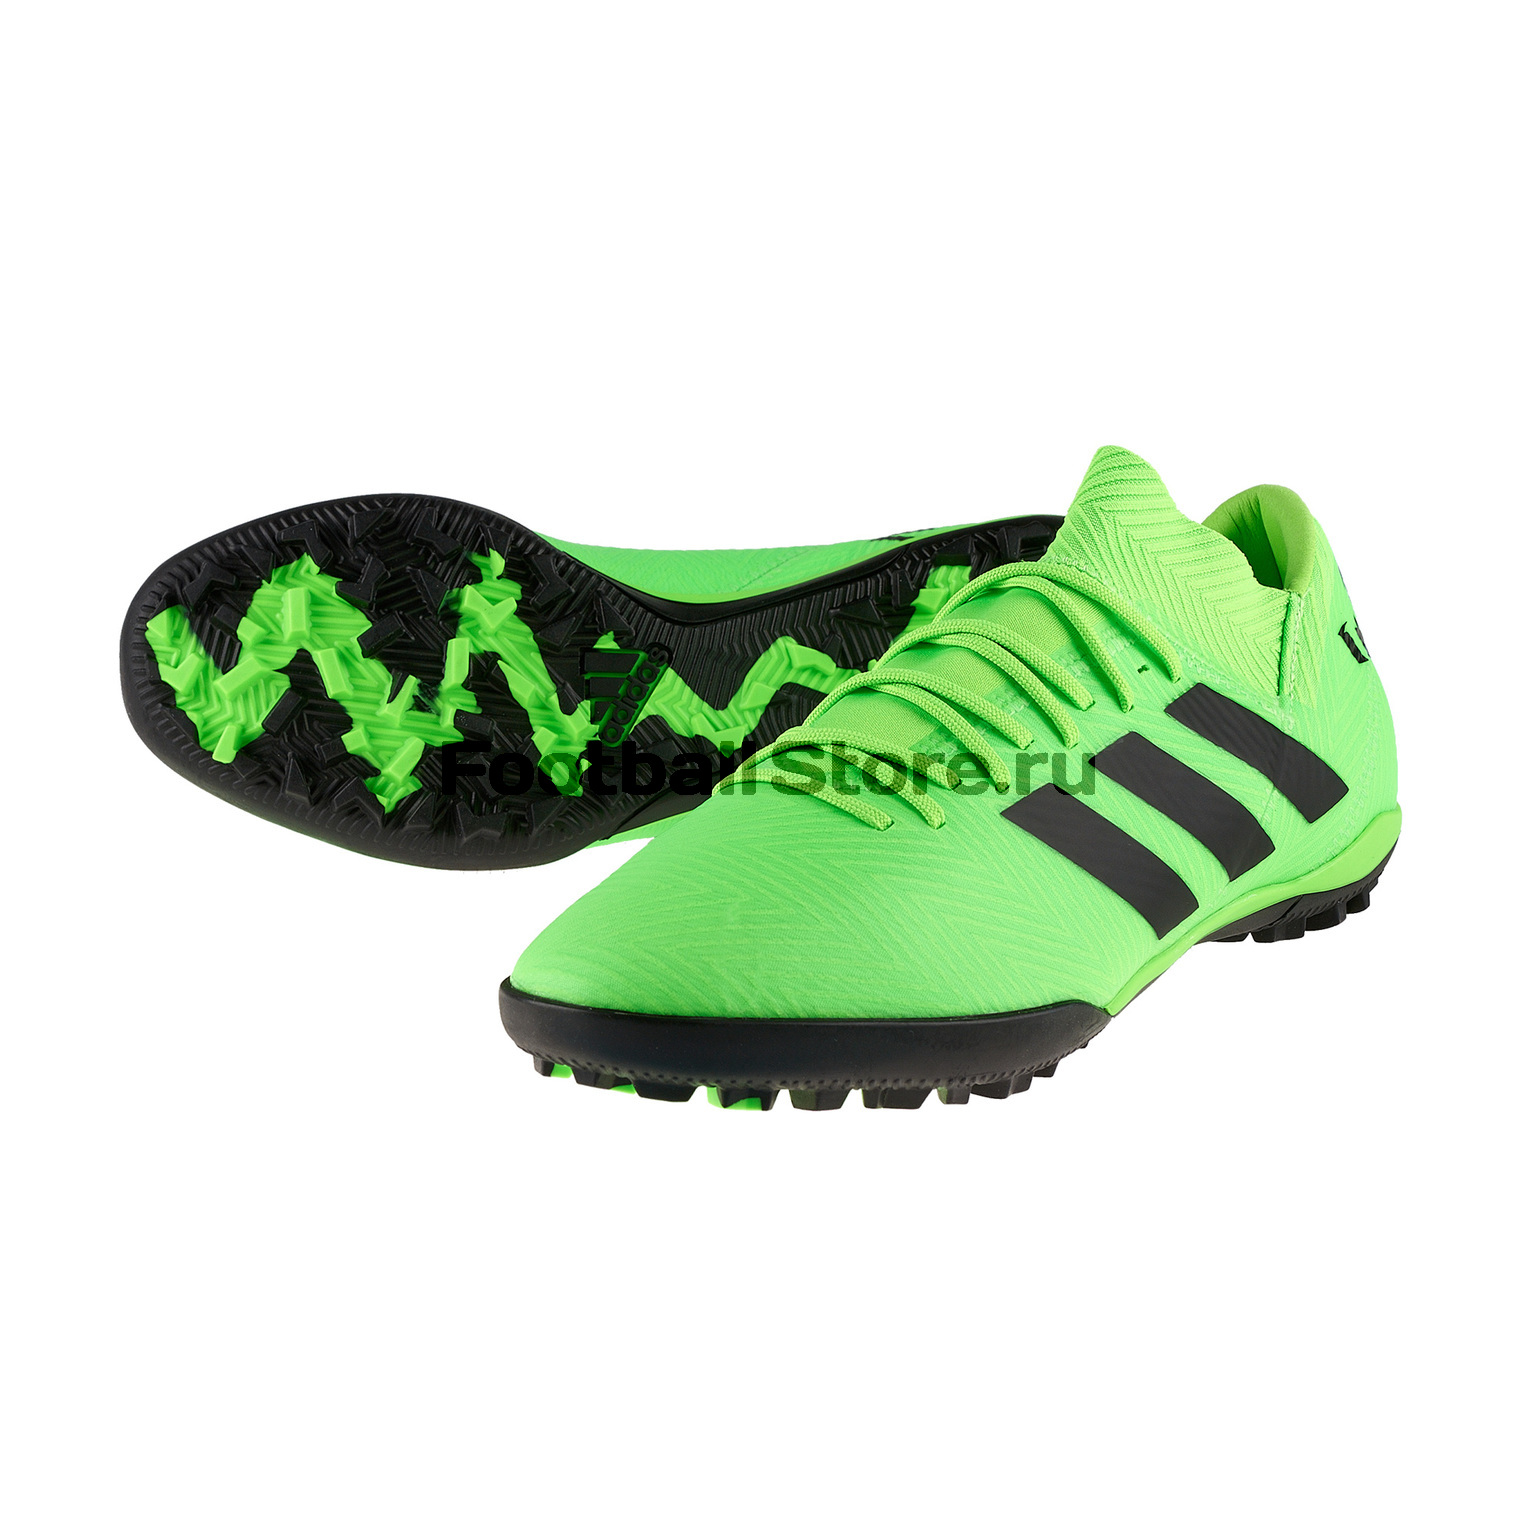 Шиповки Adidas Nemeziz Messi Tango 18.3 TF AQ0612